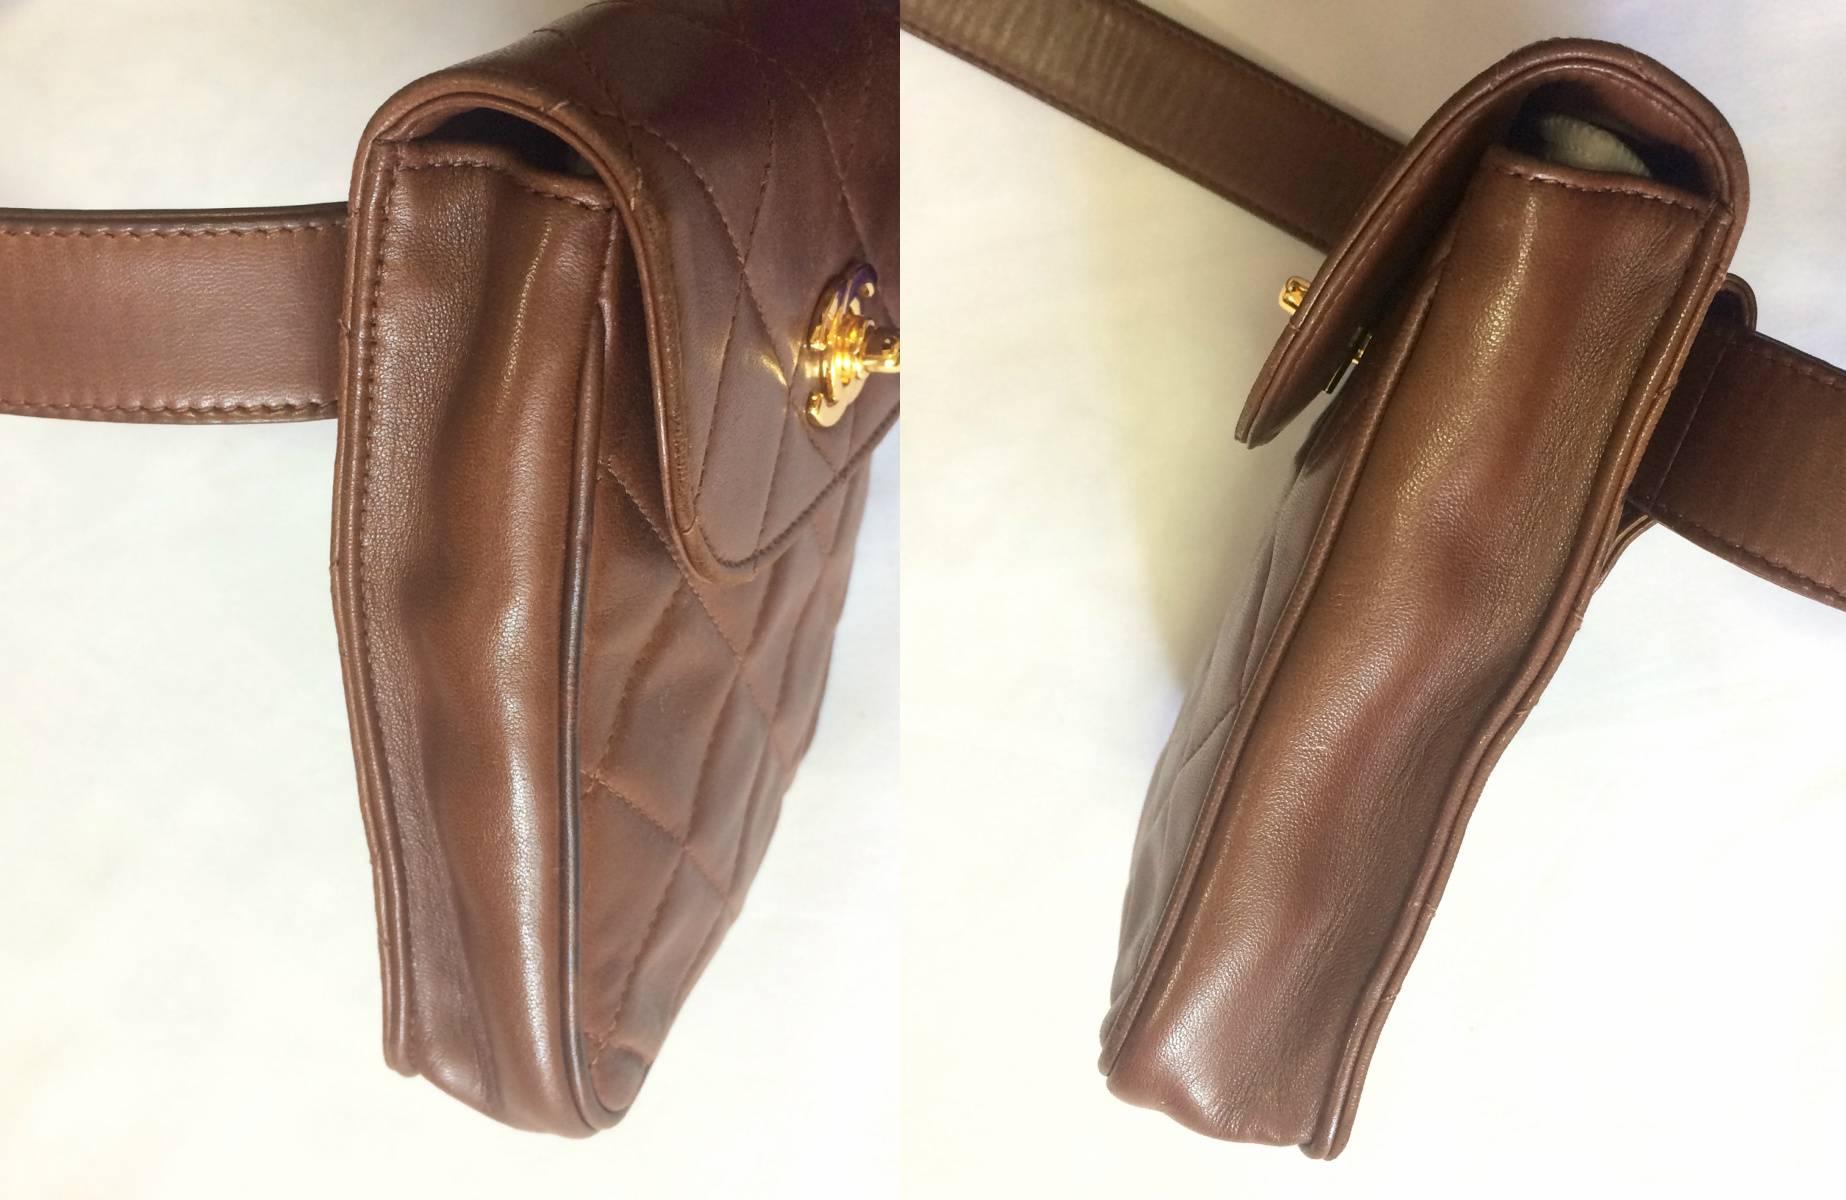 Vintage CHANEL brown leather vertical square shape belt bag, 2.55 fanny pack. 1